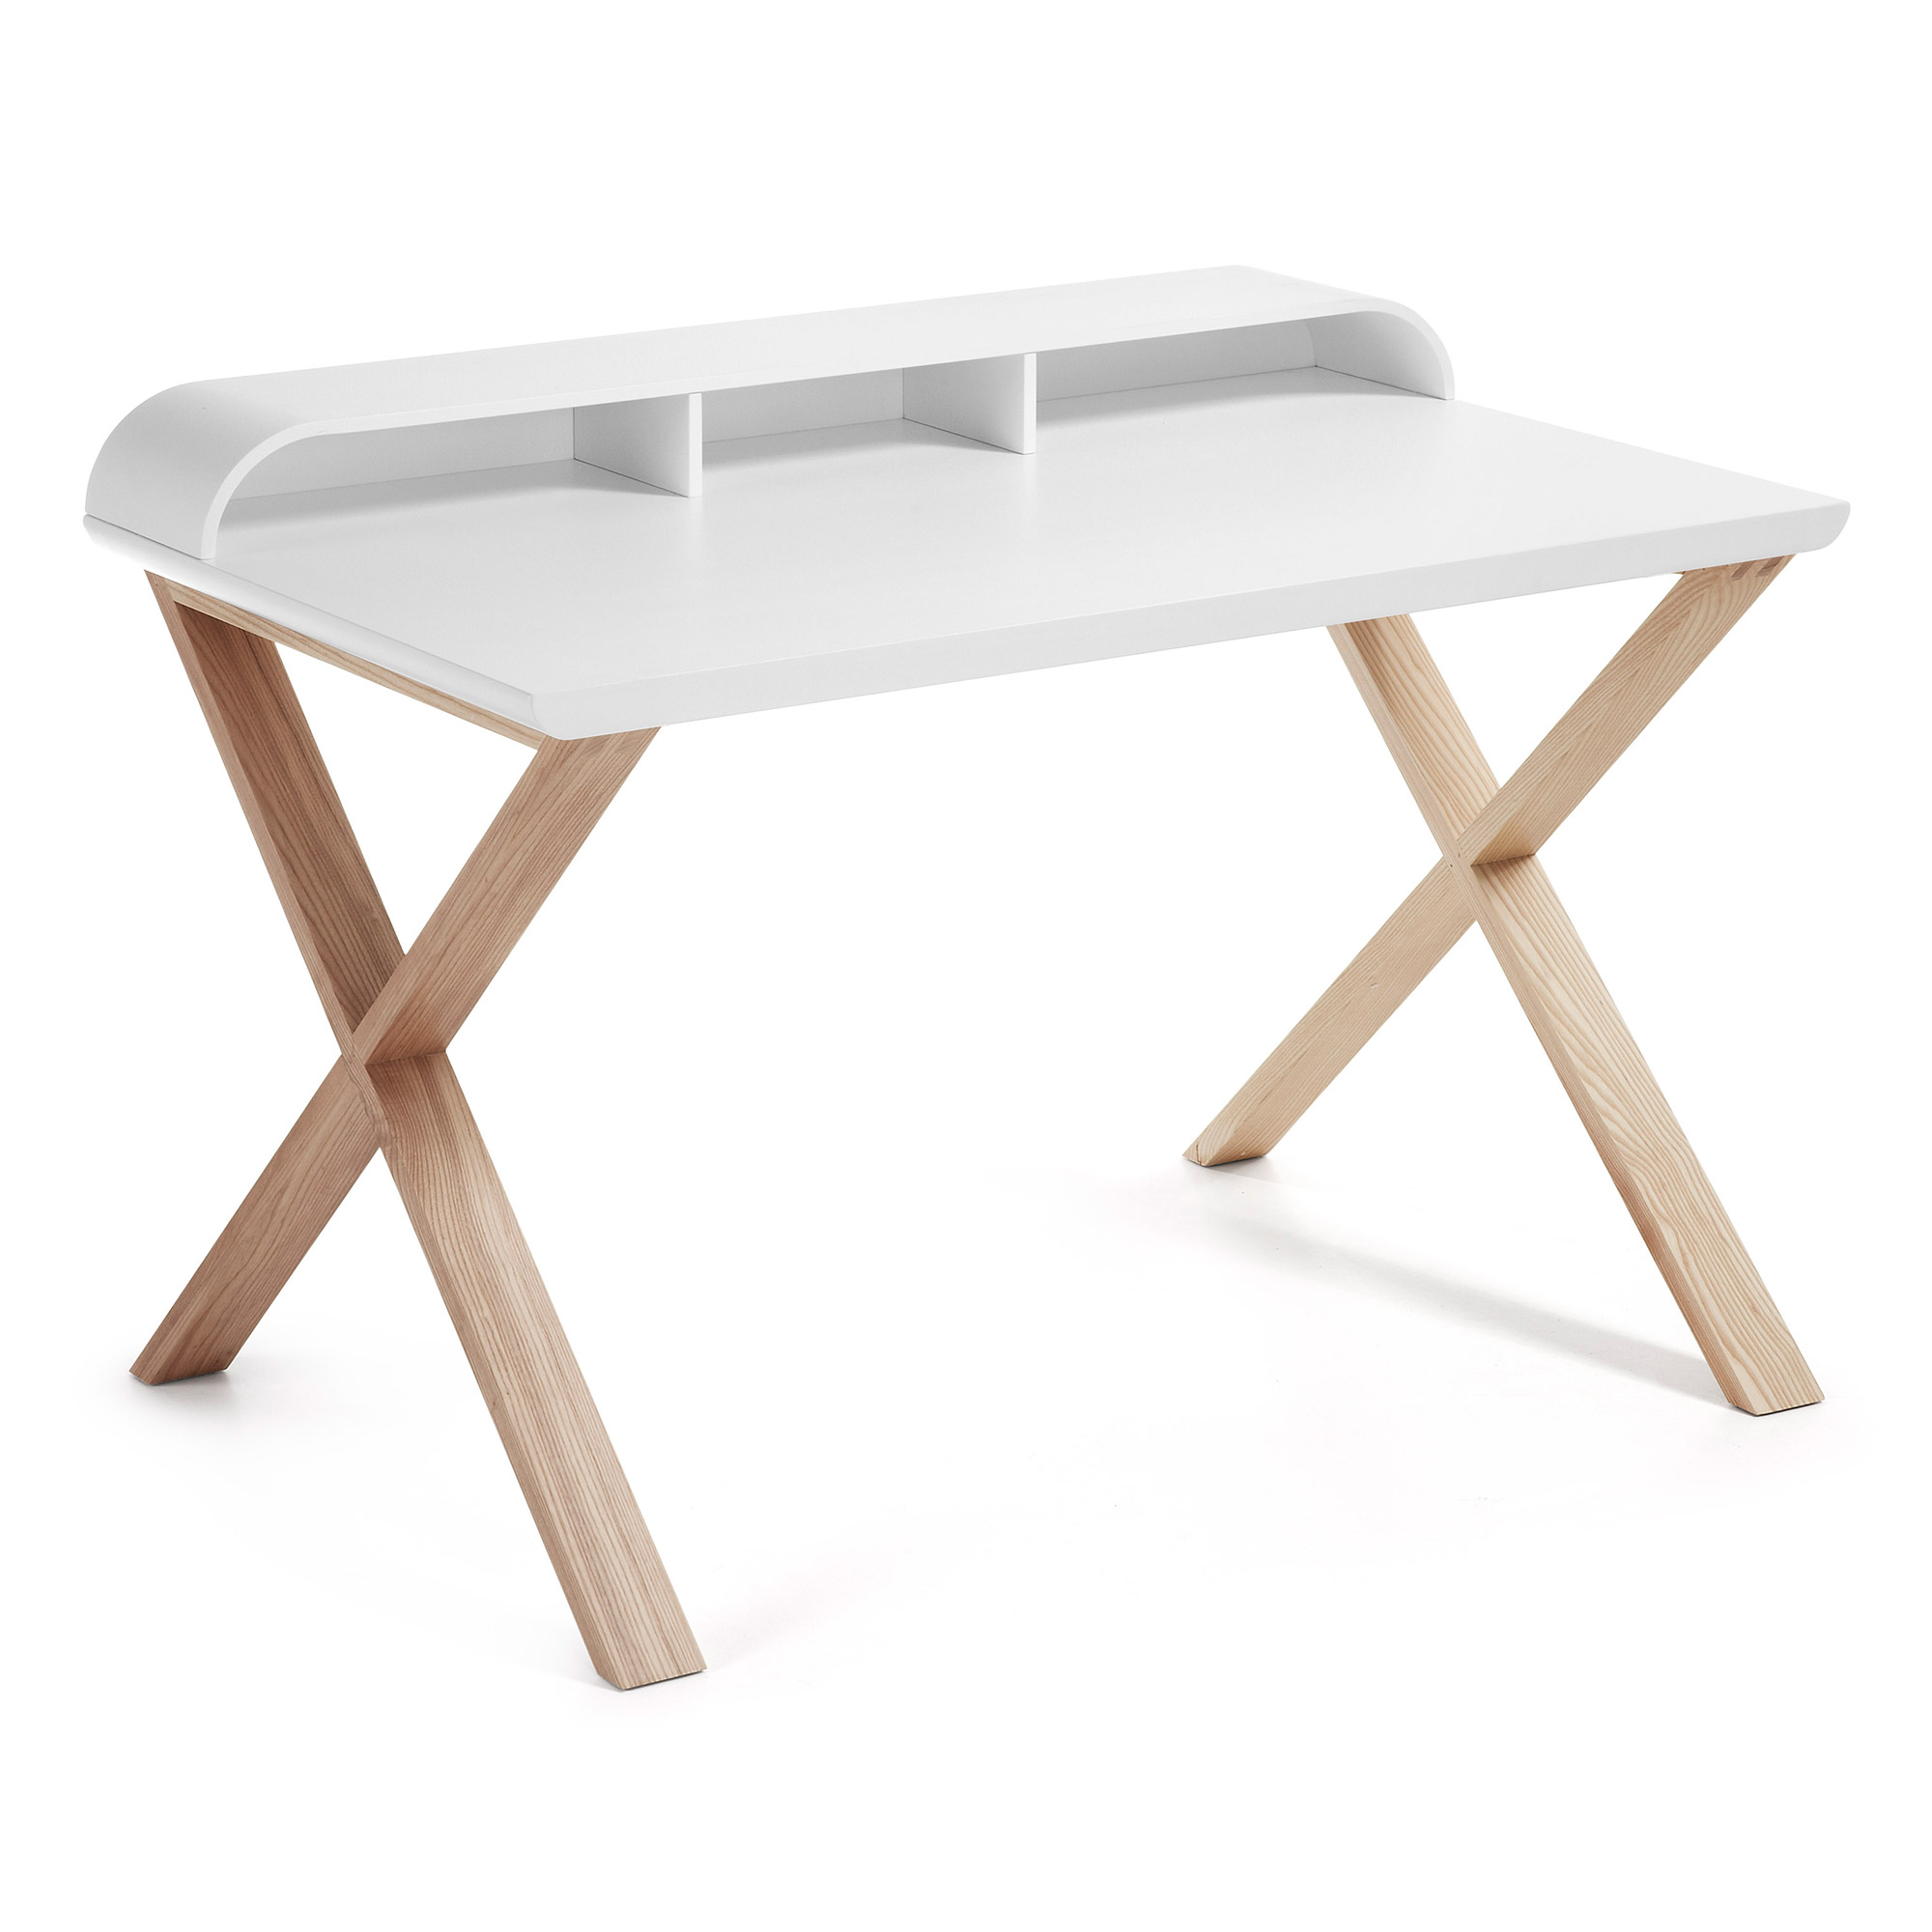 Mesa escritorio blanco Nordico DK-900 ❤️ 245,00€